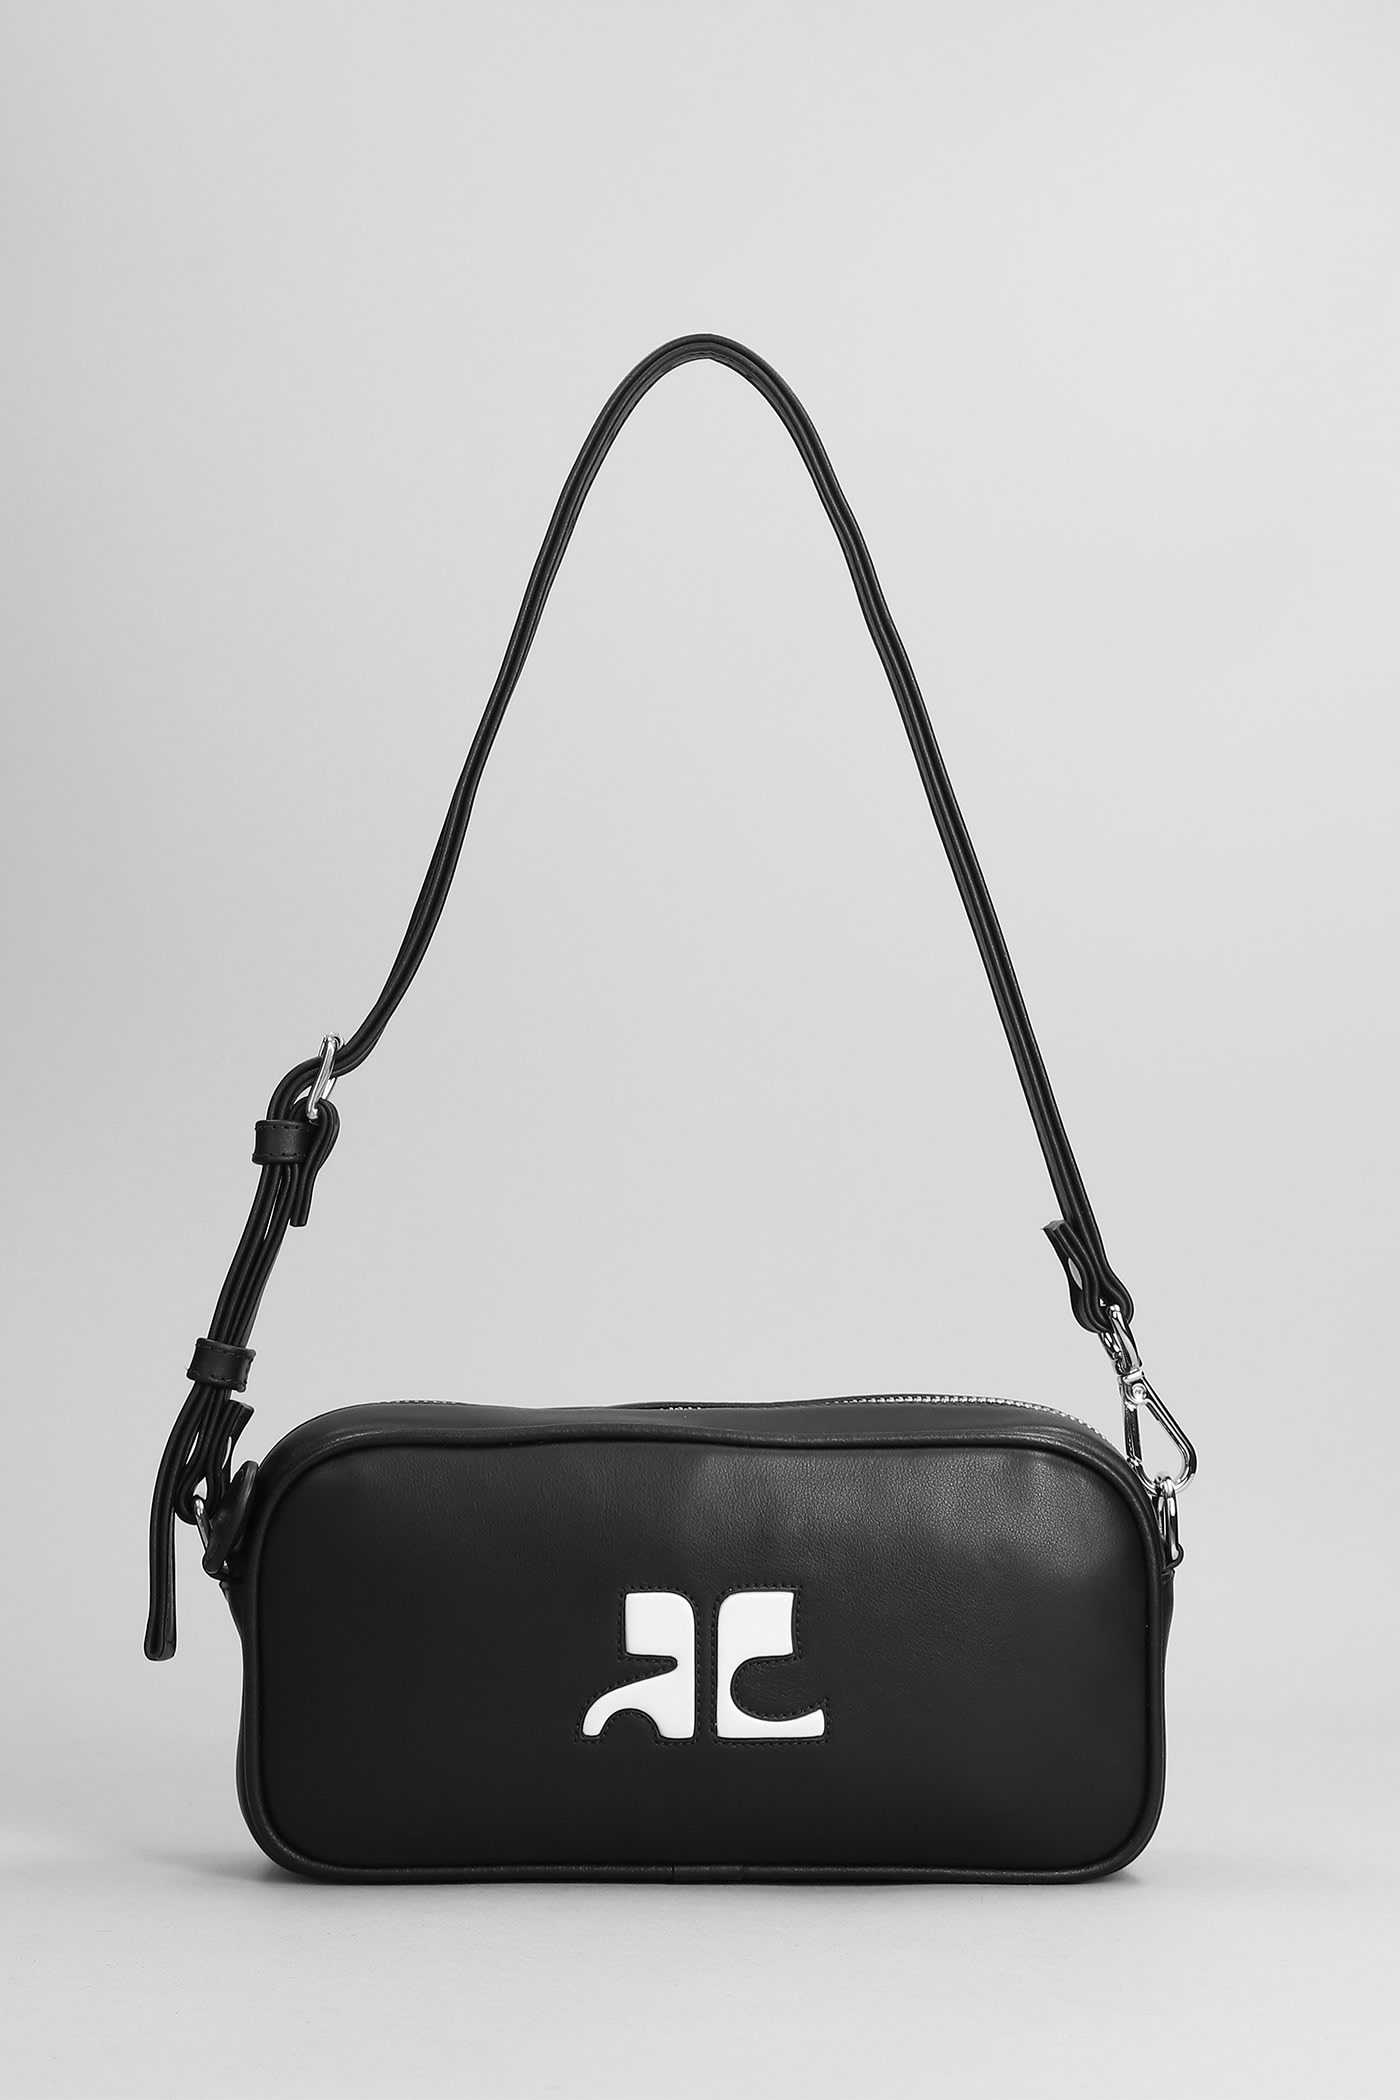 Courrèges Baguette Camera Cuir Shoulder Bag In Black Leather